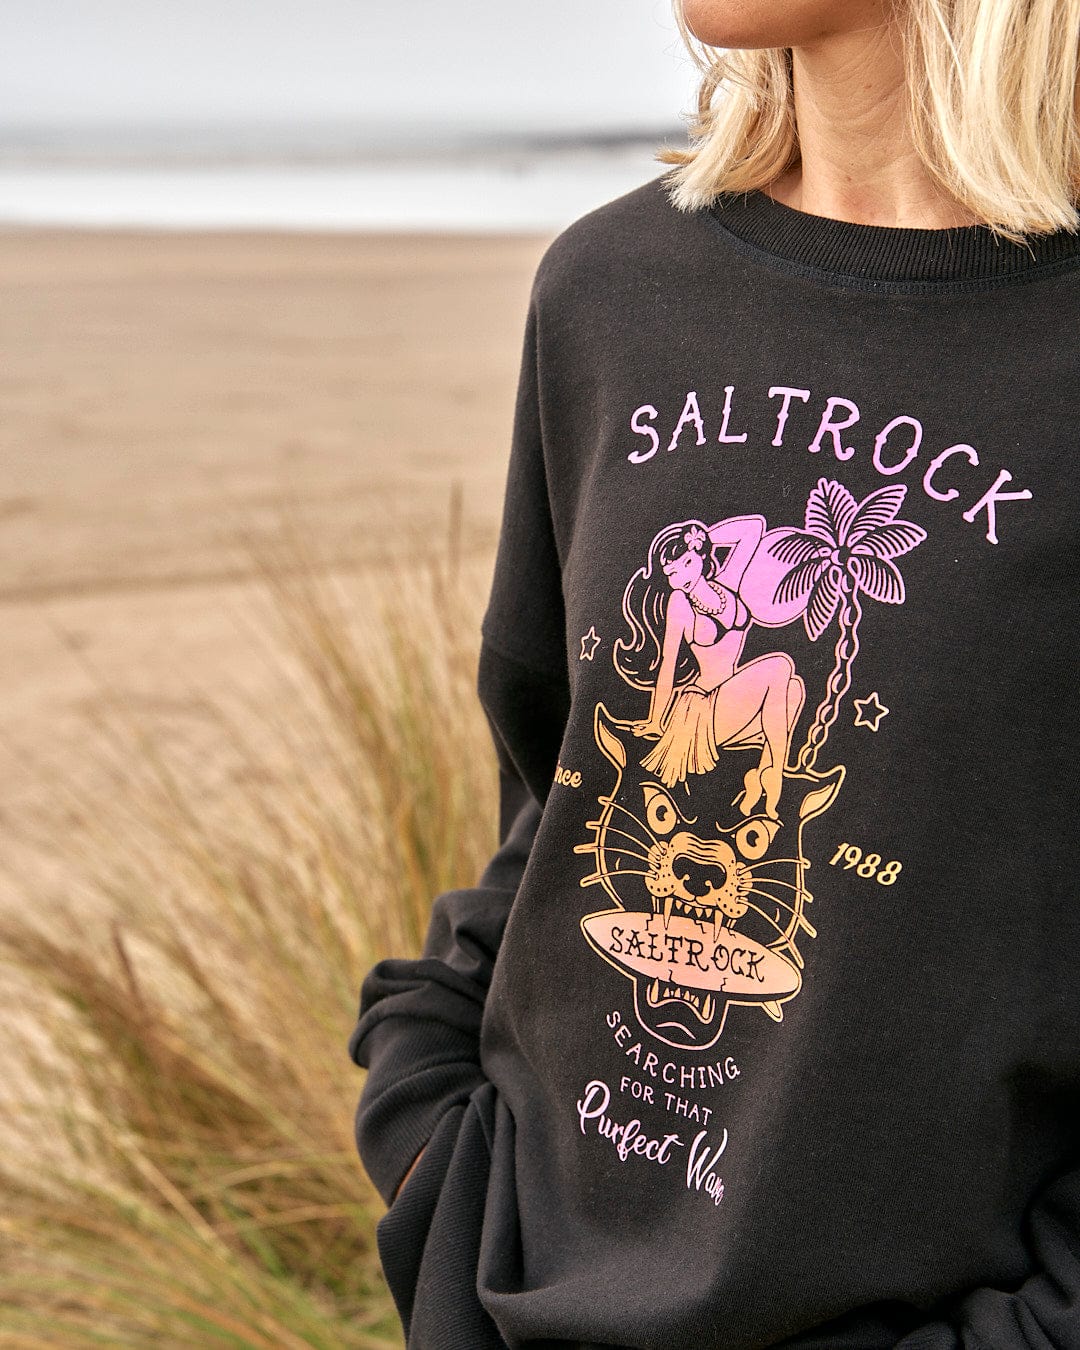 A woman wearing a Purfect Wave Gradient - Womens Boyfriend Fit Sweat - Black sweatshirt by Saltrock.